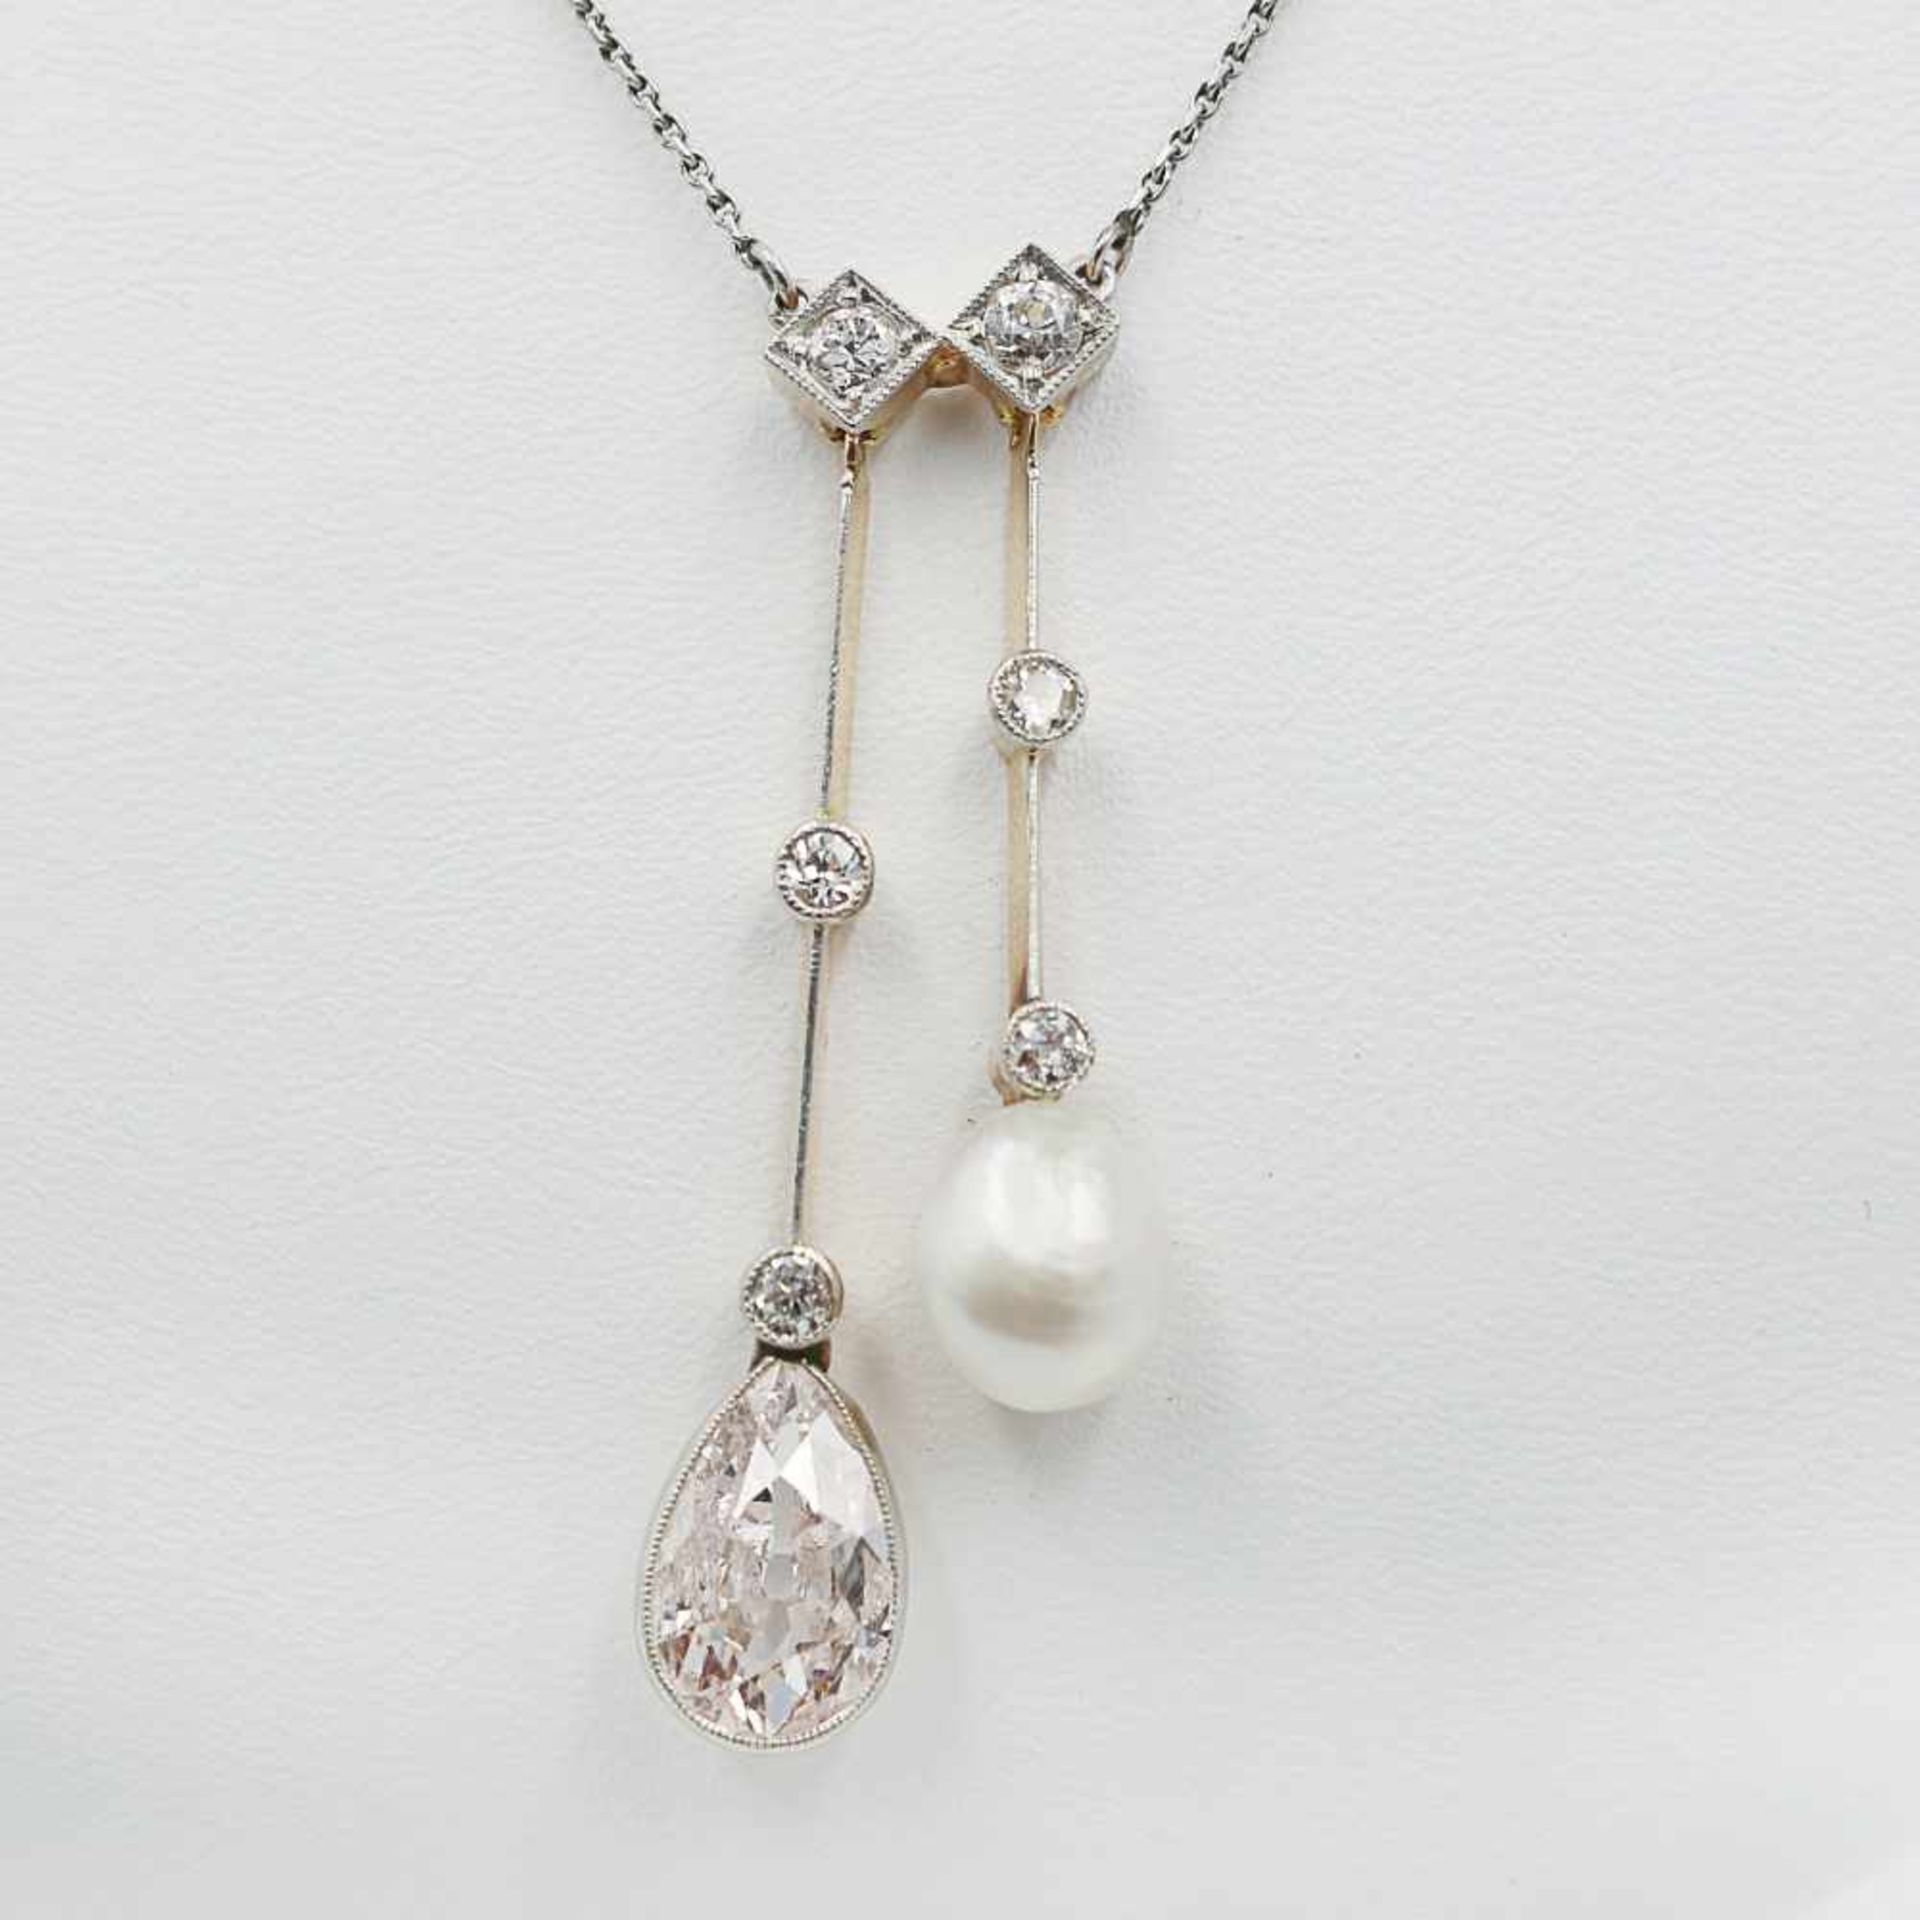 Perle/Diamanten - Collier um 1900, Jugendstil, Pl/GG 585, Mittelteil, GG 585, aus zarten Stegen